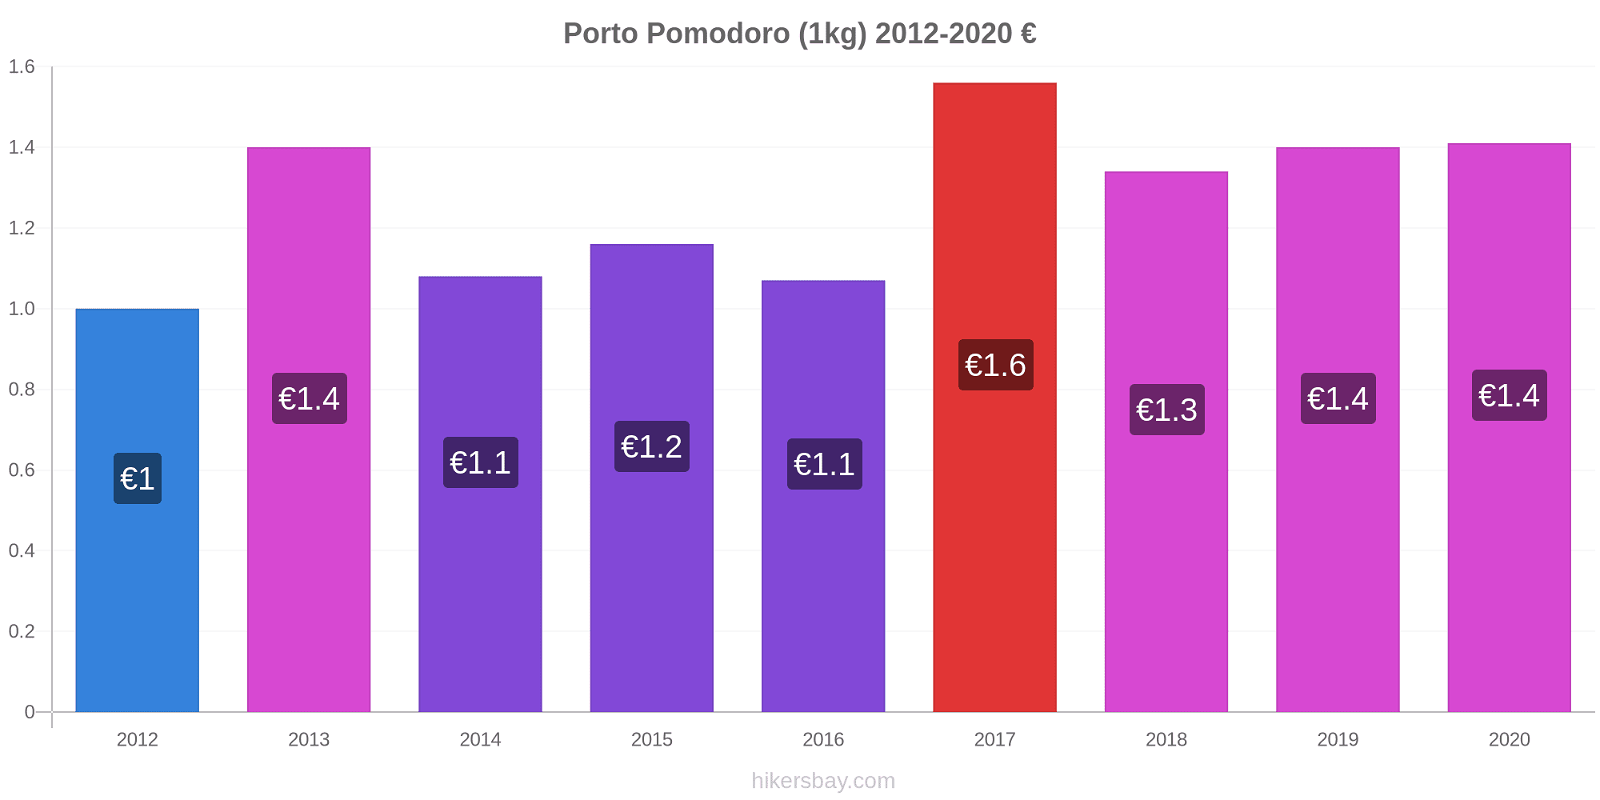 Porto variazioni di prezzo Pomodoro (1kg) hikersbay.com